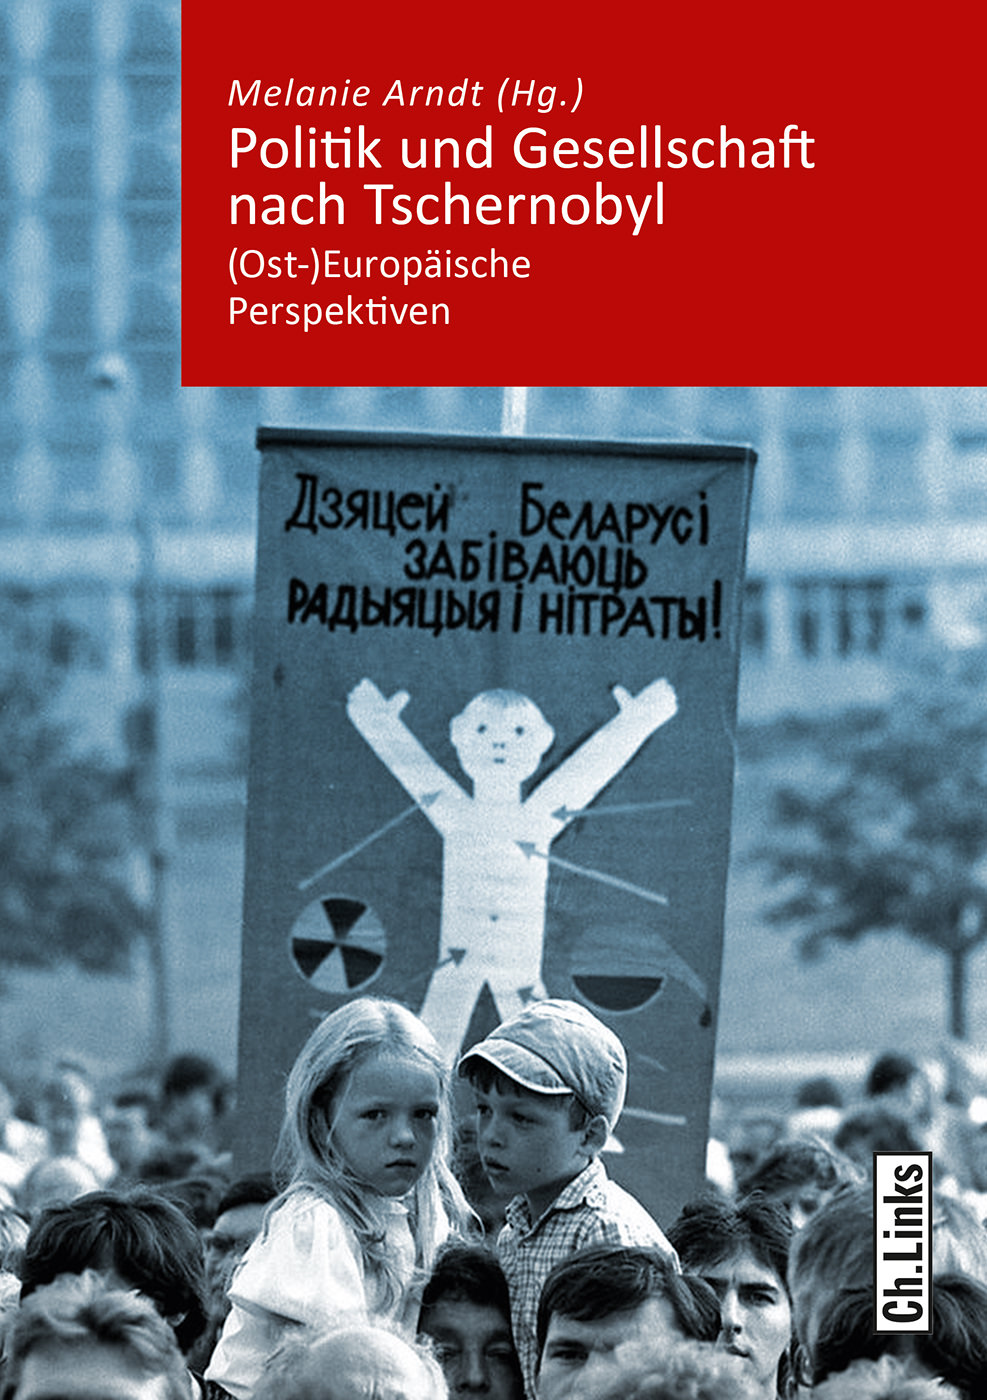 Melanie Arndt (Hg.): Politik und Gesellschaft nach Tschernobyl